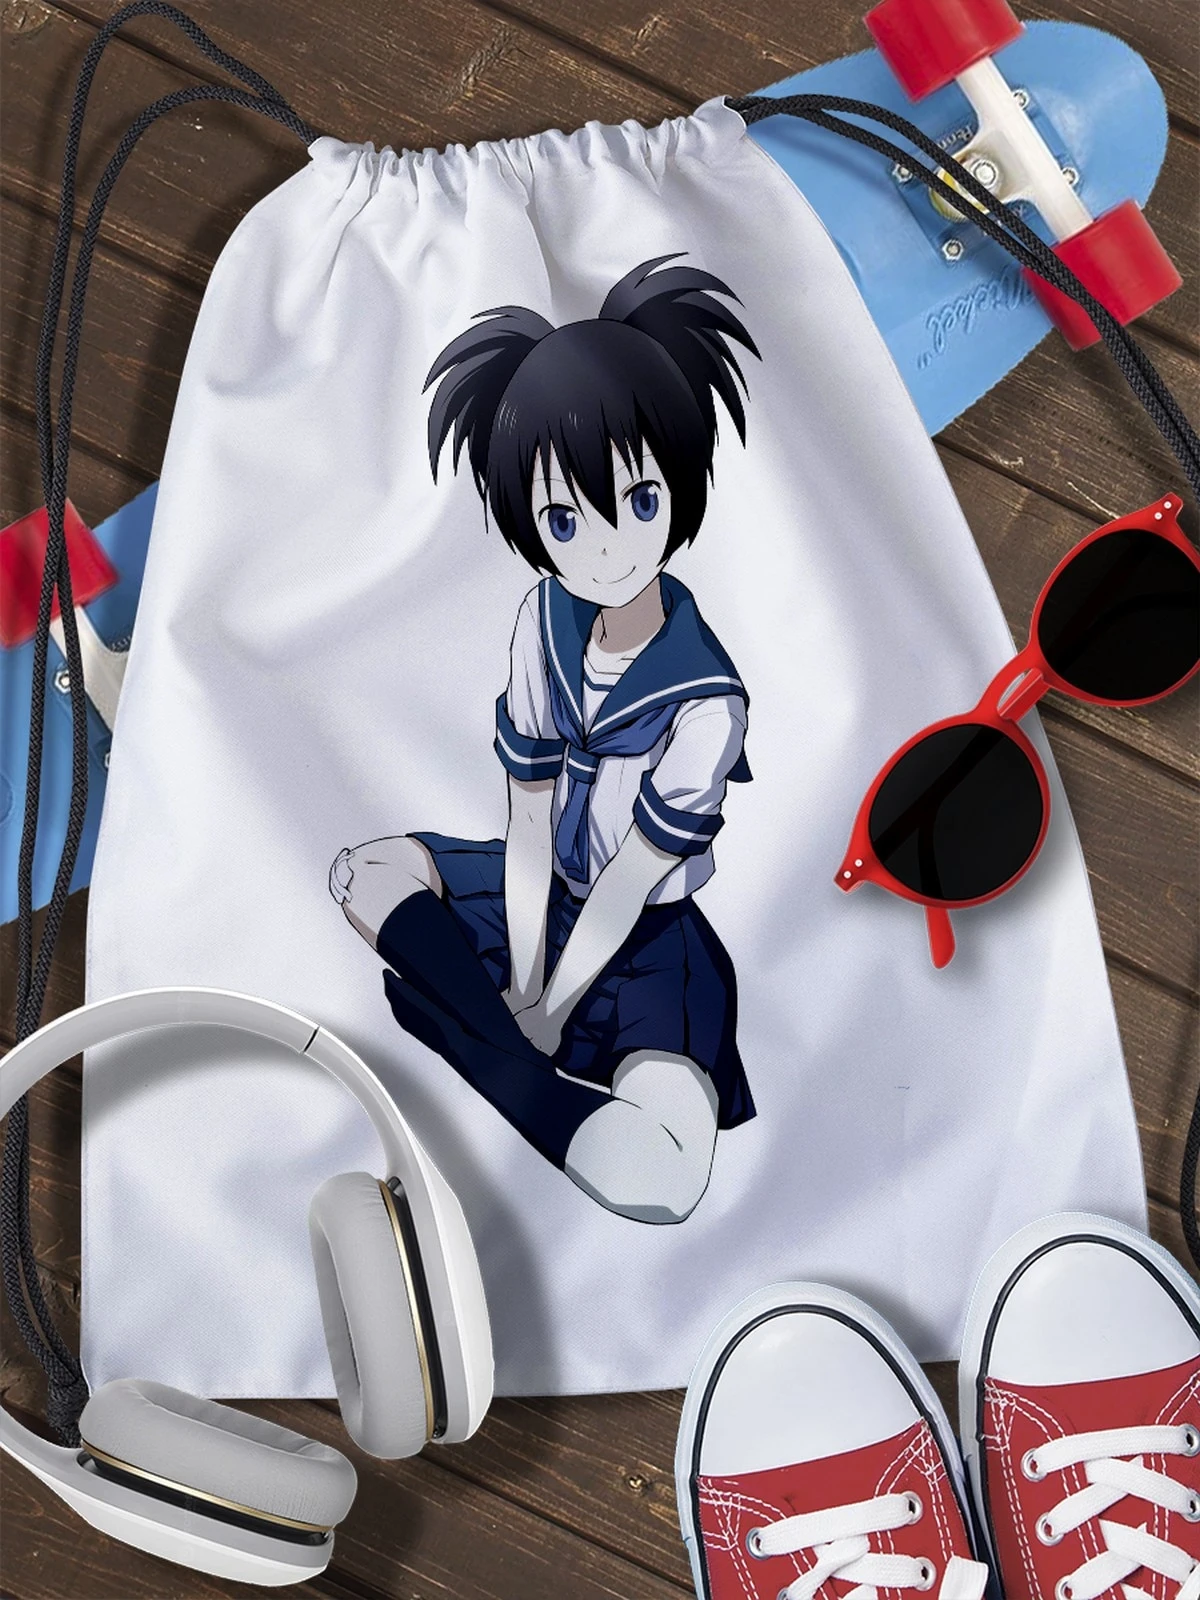 Pouch bag for shoes Arrow Black Rocks (Black Rock Shooter Anime, sci fi,  matou курои, Vocaloid, Miku Hatsune) 2266|Drawstring Bags| - AliExpress